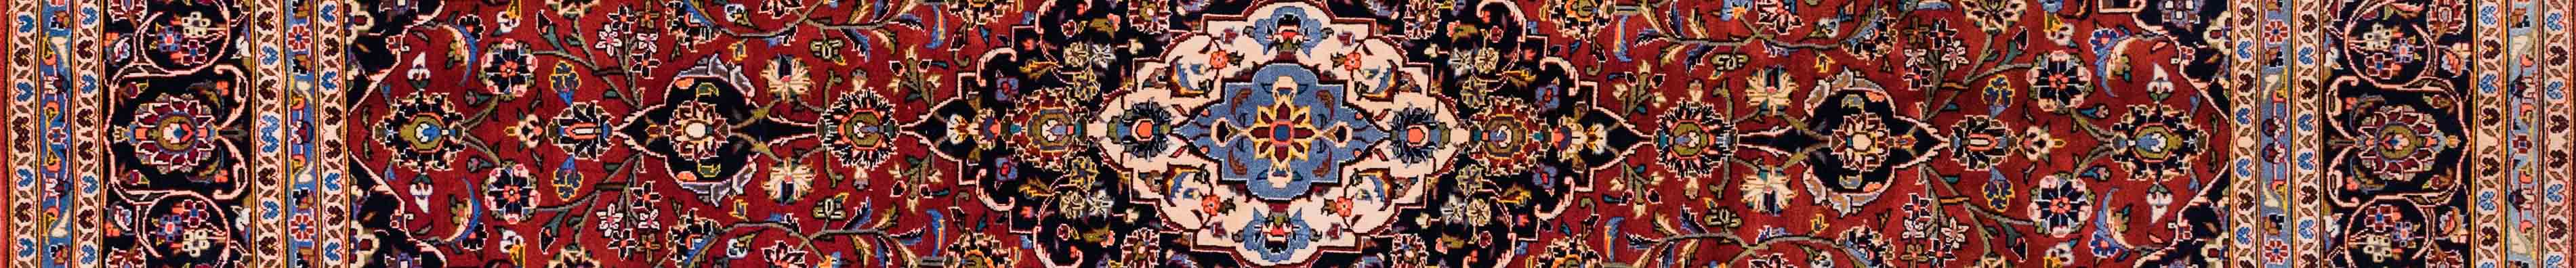 Kashan Persian Carpet Rug N1Carpet Canada Montreal Tapis Persan 3600